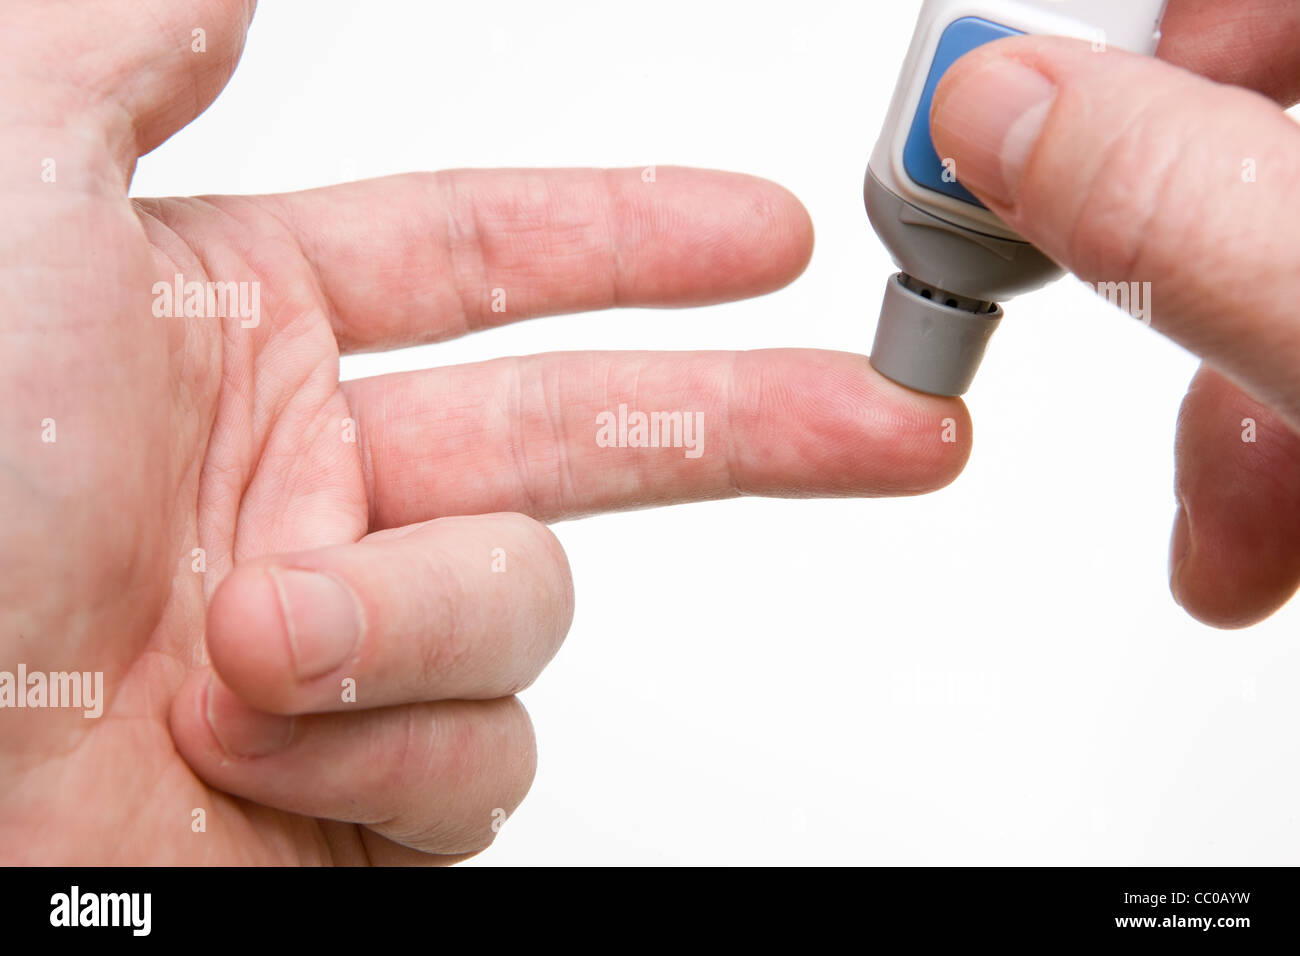 Eine Lanzette findet gegen einen Finger für eine Blutzuckermessung verwendet werden. Stockfoto